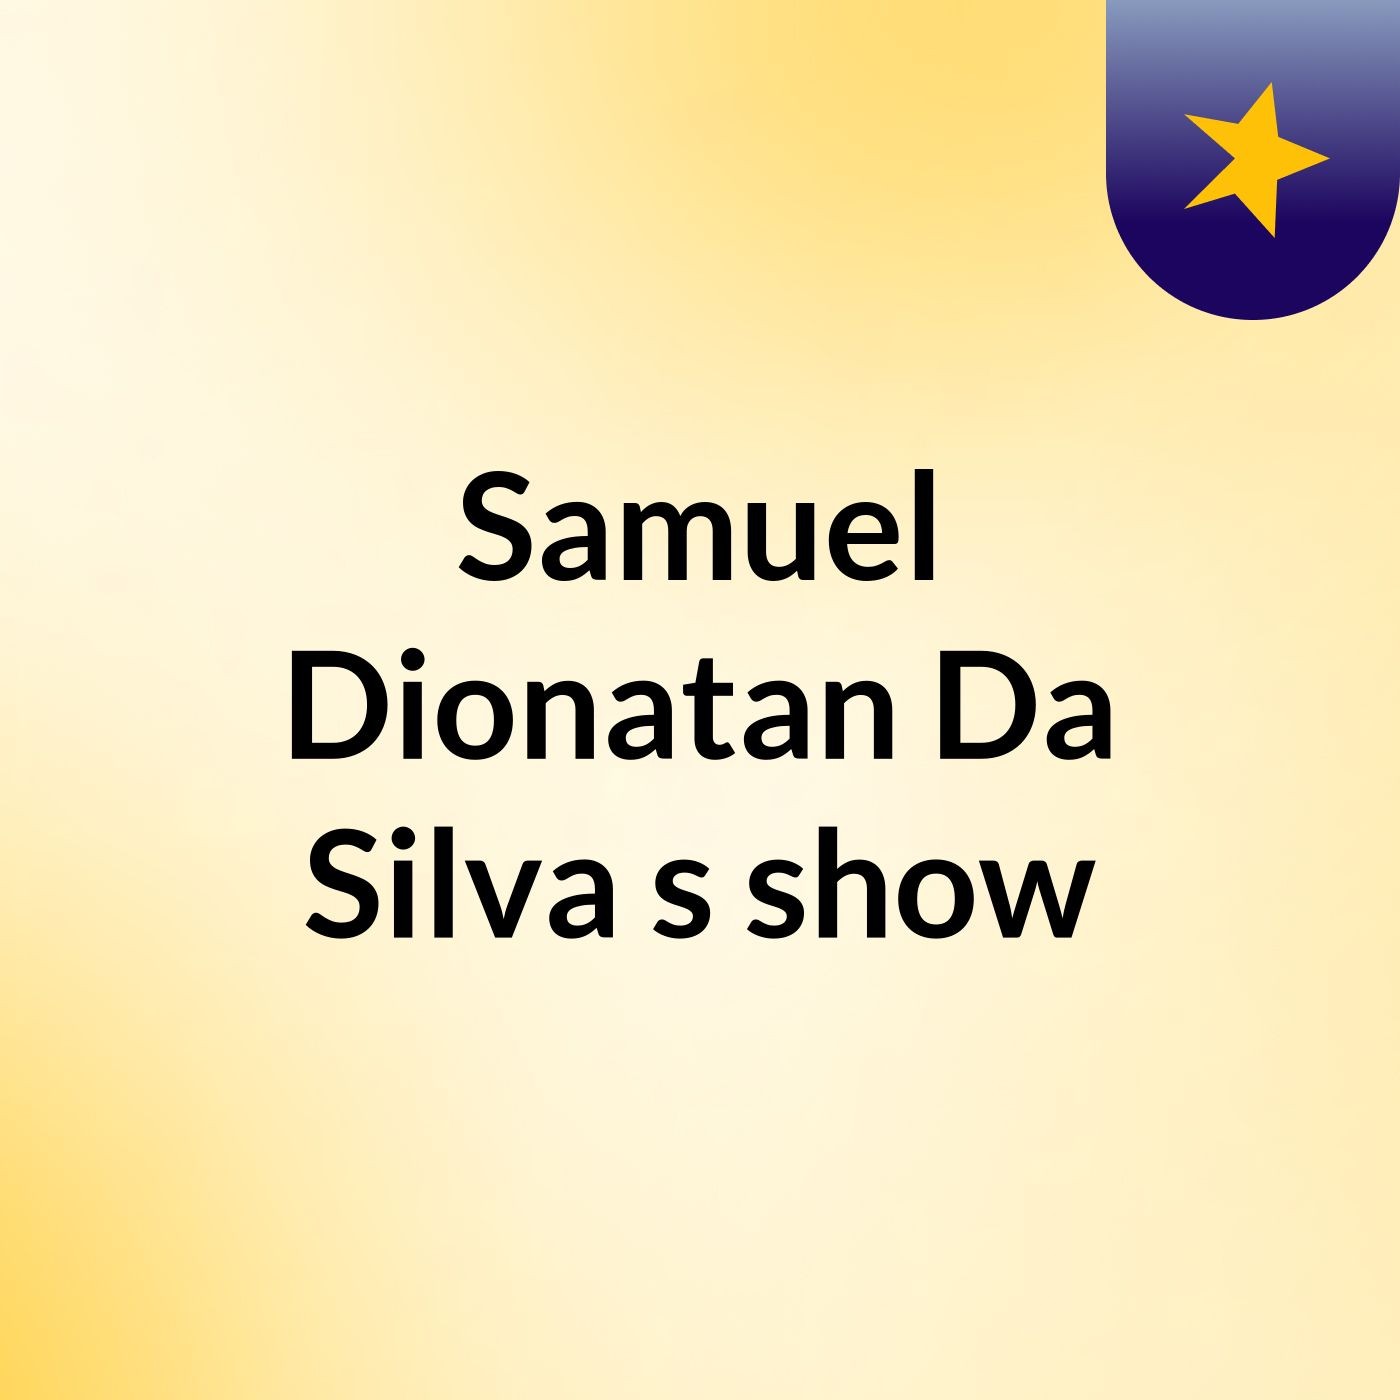 Samuel Dionatan Da Silva's show